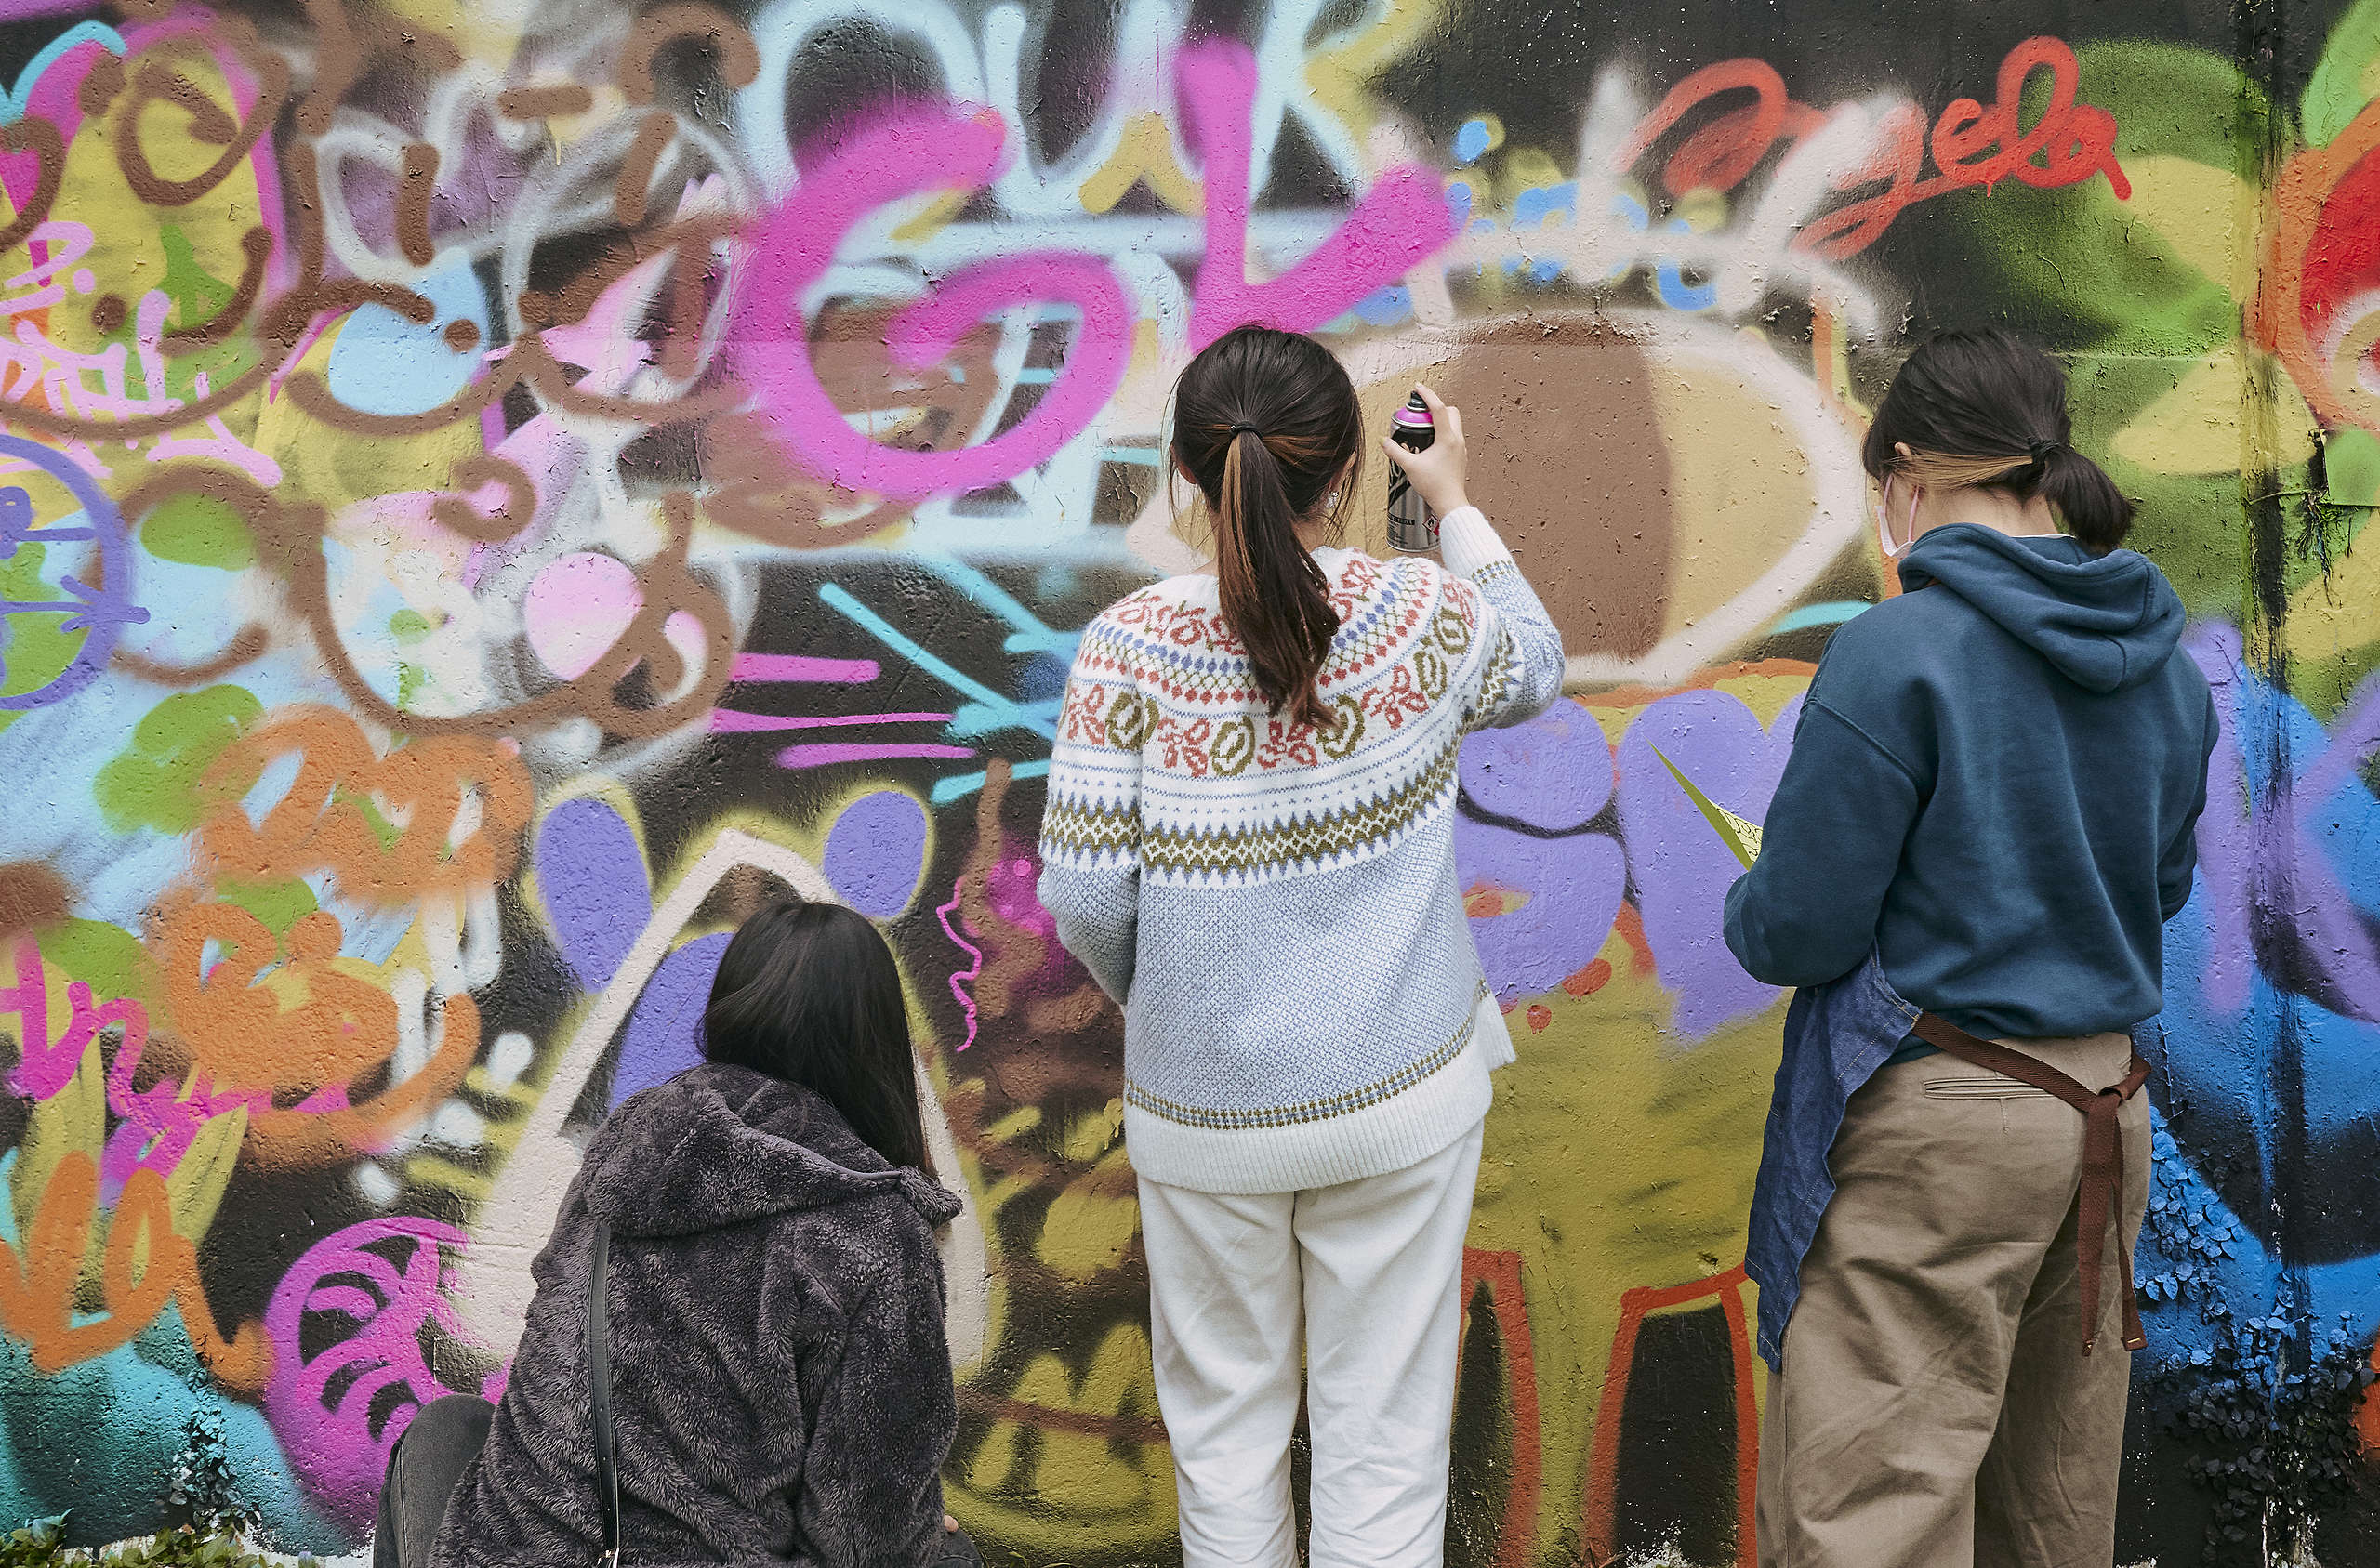 綠色和平氣候變遷教育專案團隊與街頭塗鴉藝術家合作,引導學生 透過創作進行氣候倡議與行動。